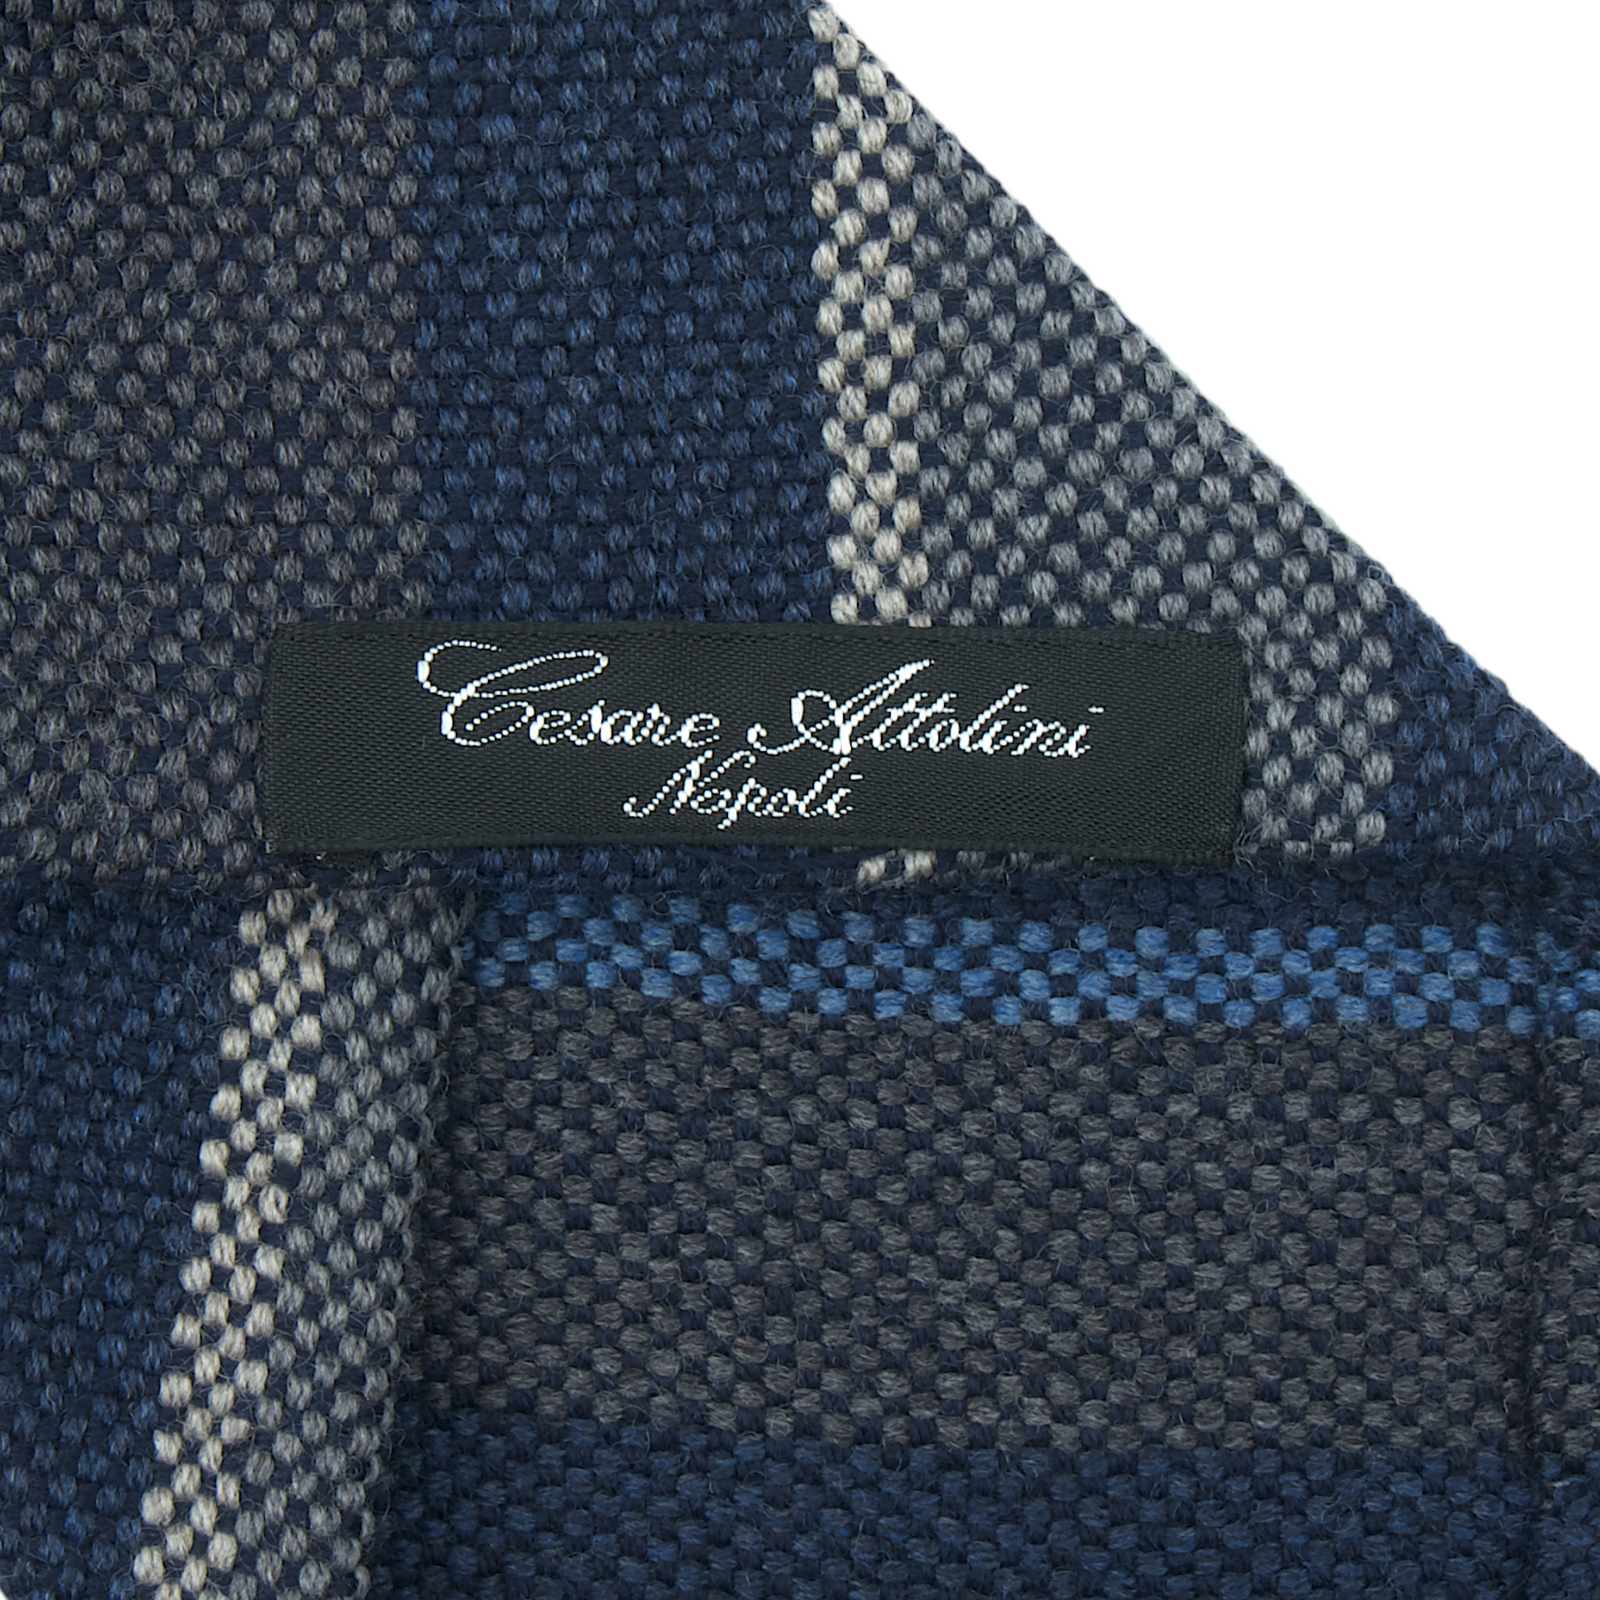 Cesare Attolini blau grau gestreifte Krawatte